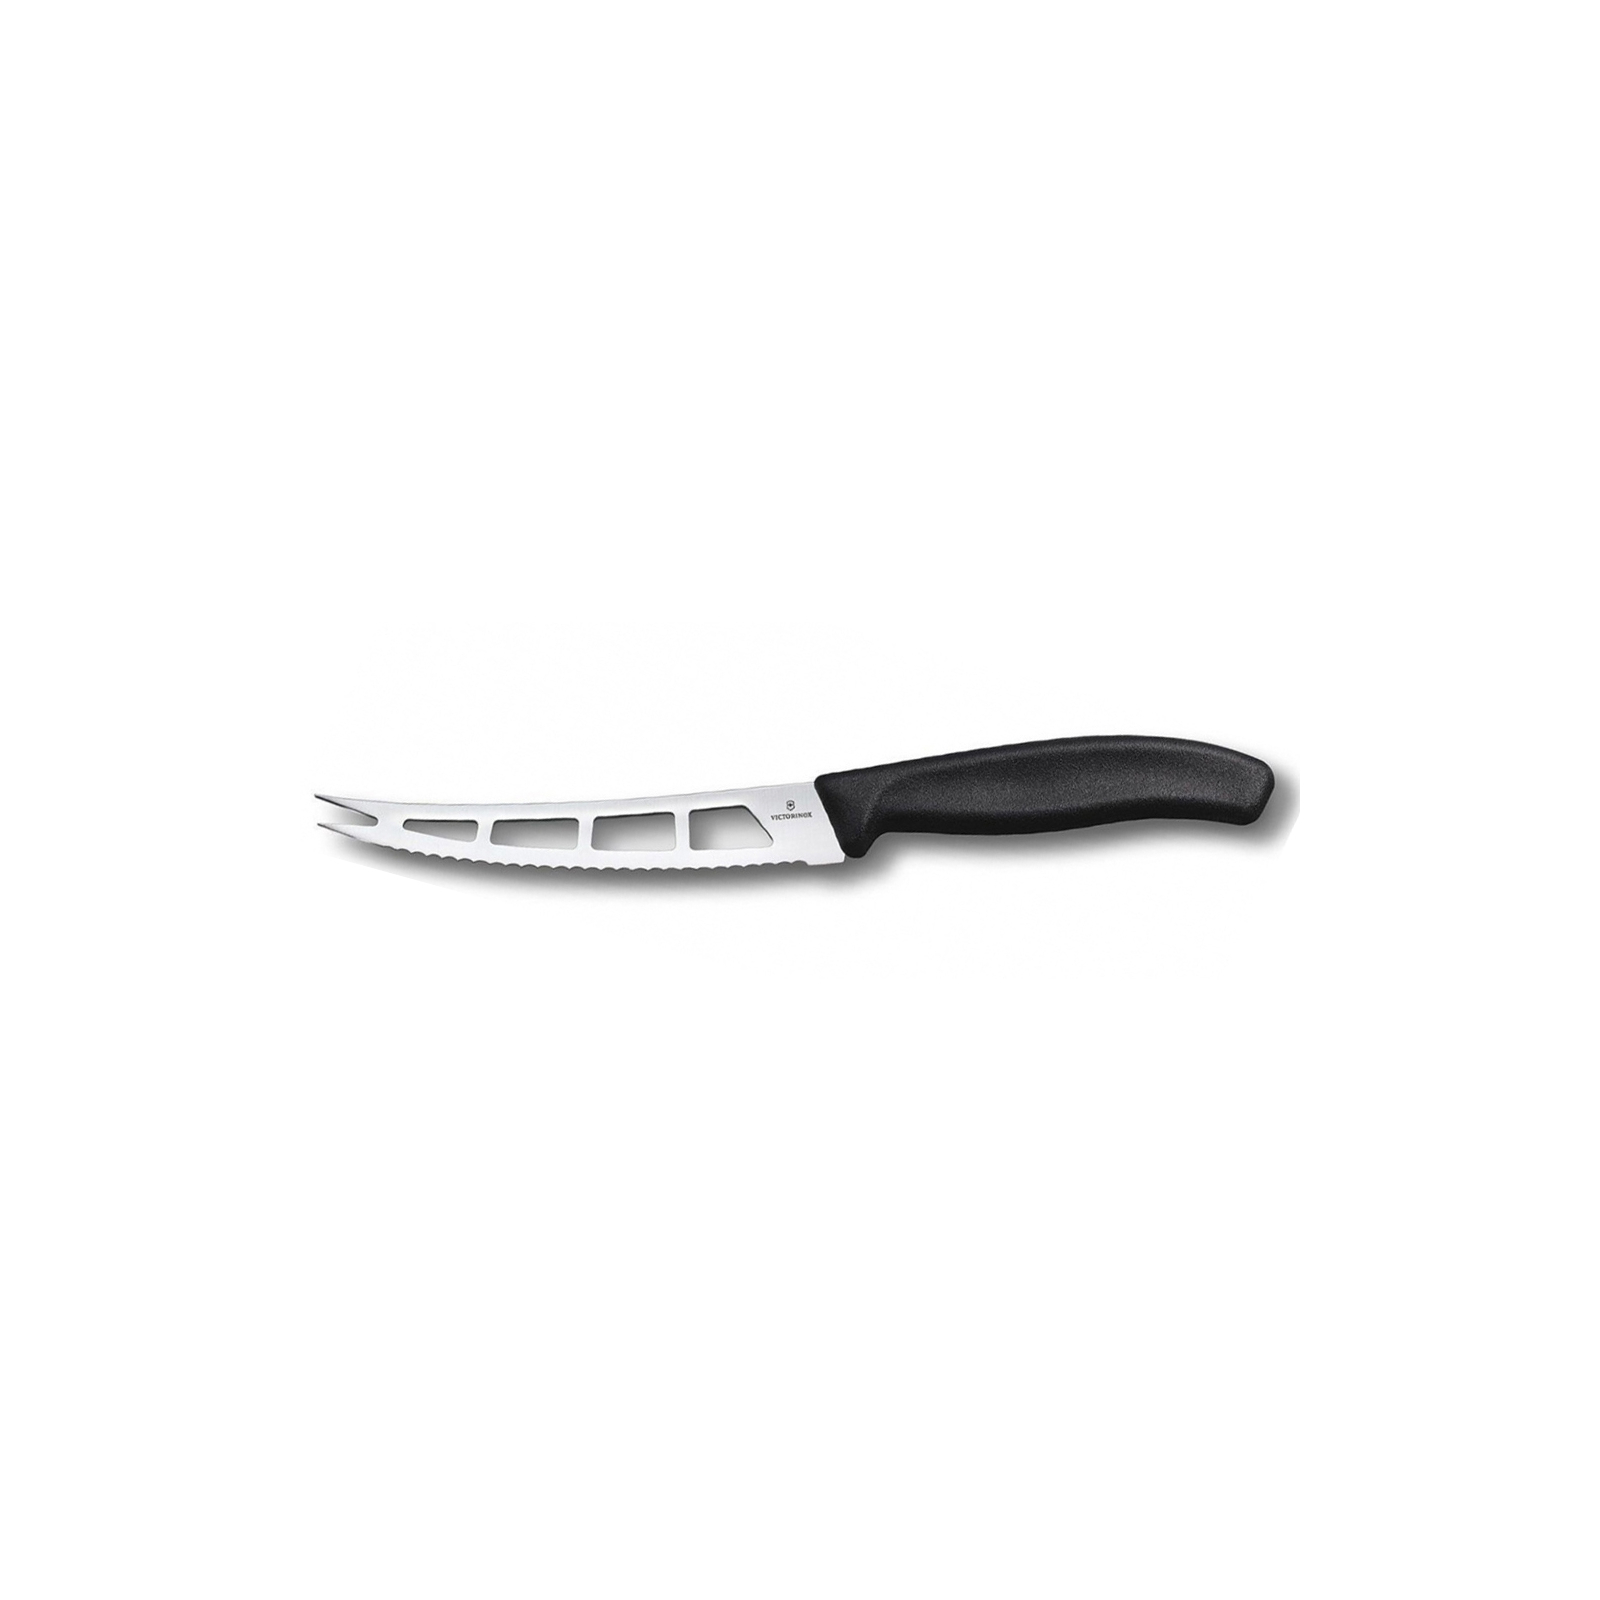 Кухонный нож Victorinox SwissClassic для масла и сыра 13 см, черный (6.7863.13B)